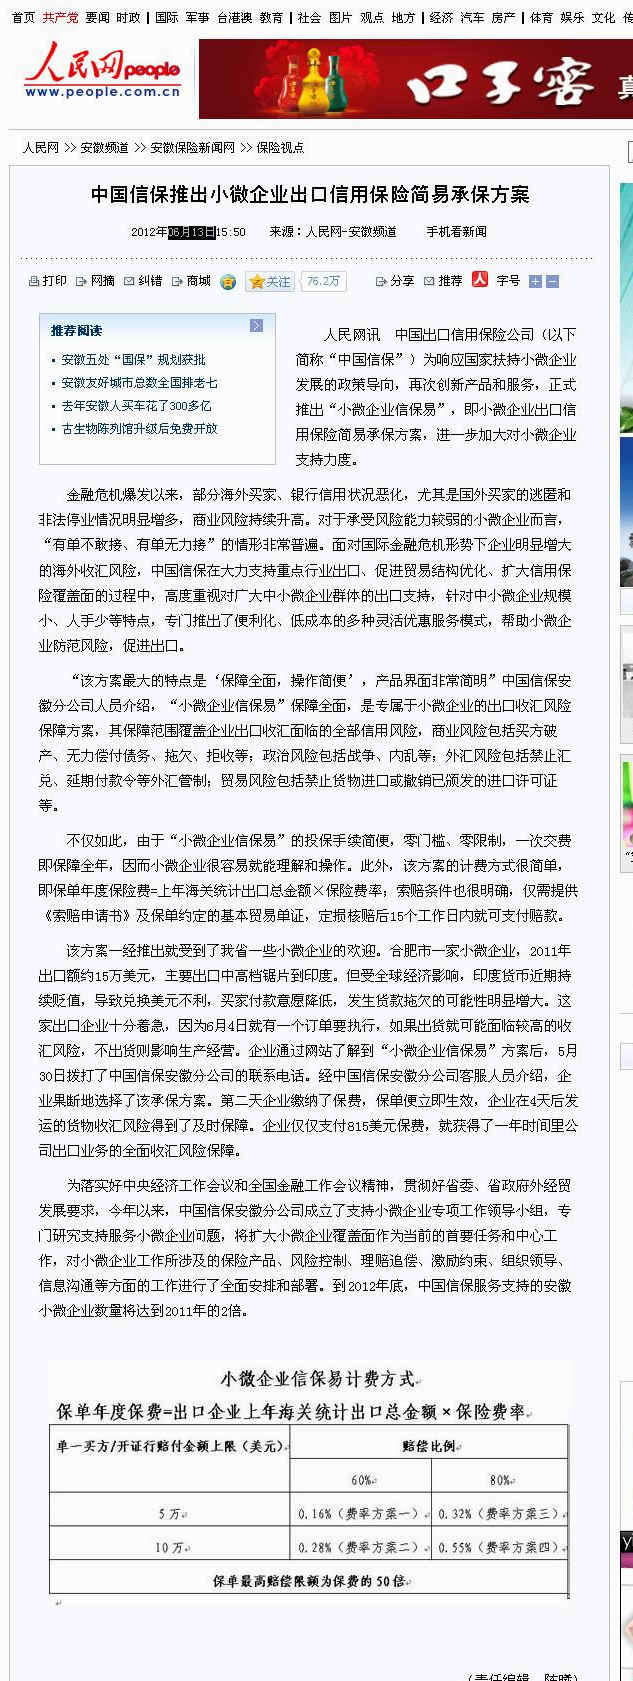 中国信保推出小微企业出口信用保险简易承保方案--安徽频道--人民网 06月13日 2.jpg